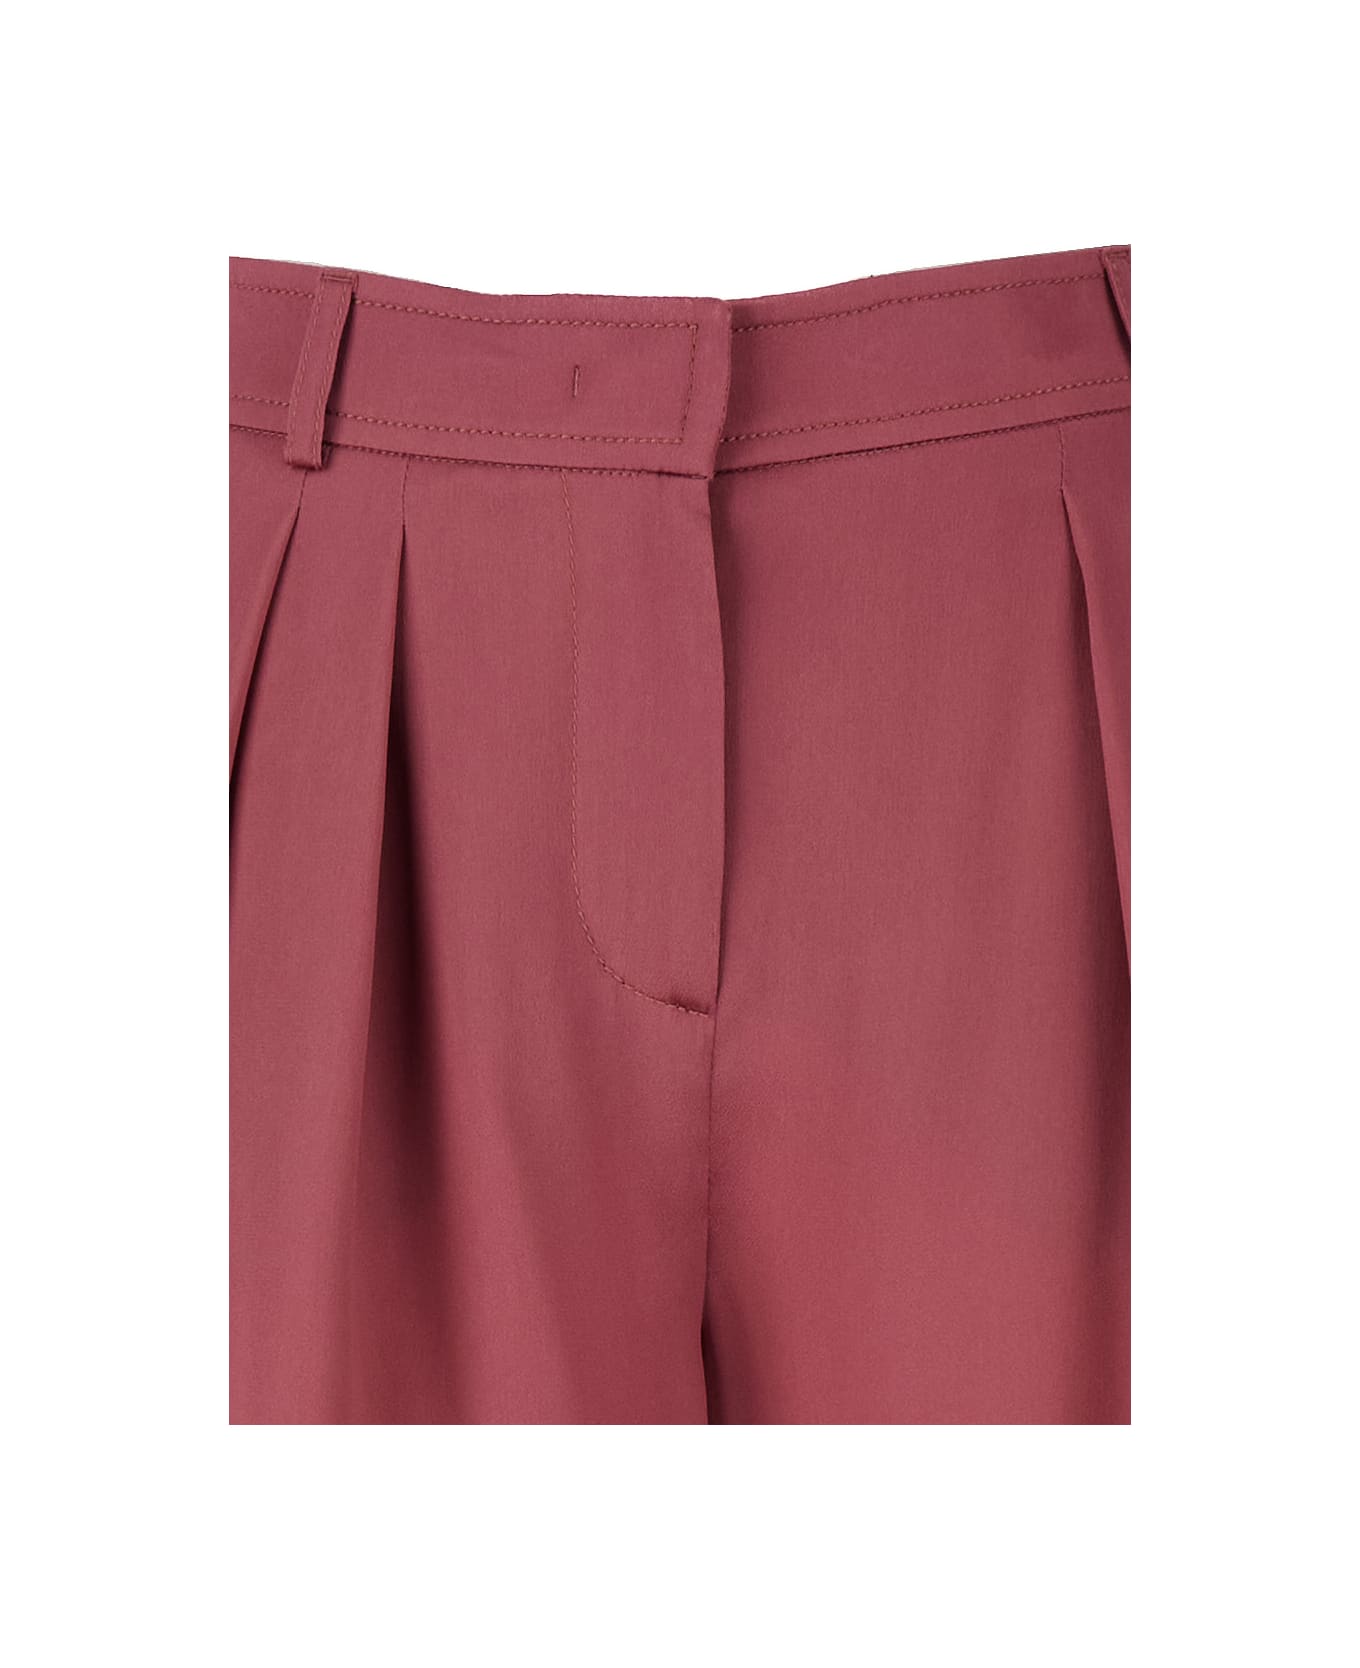 Alberta Ferretti Pink Satin Knee Shorts In Silk Blend Woman - Pink